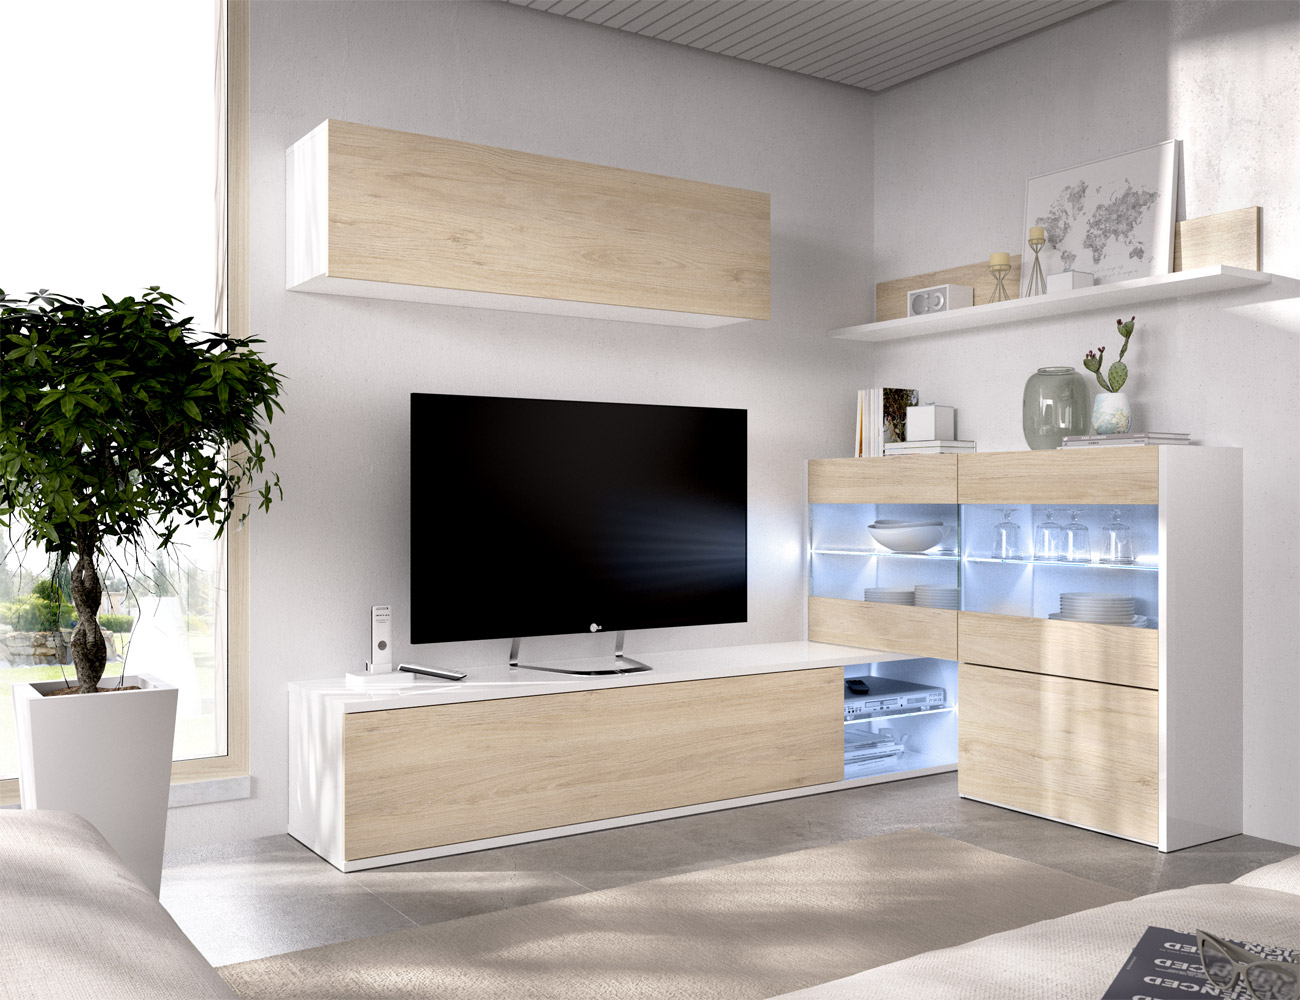 Mueble de salón moderno estilo nórdico (30151)